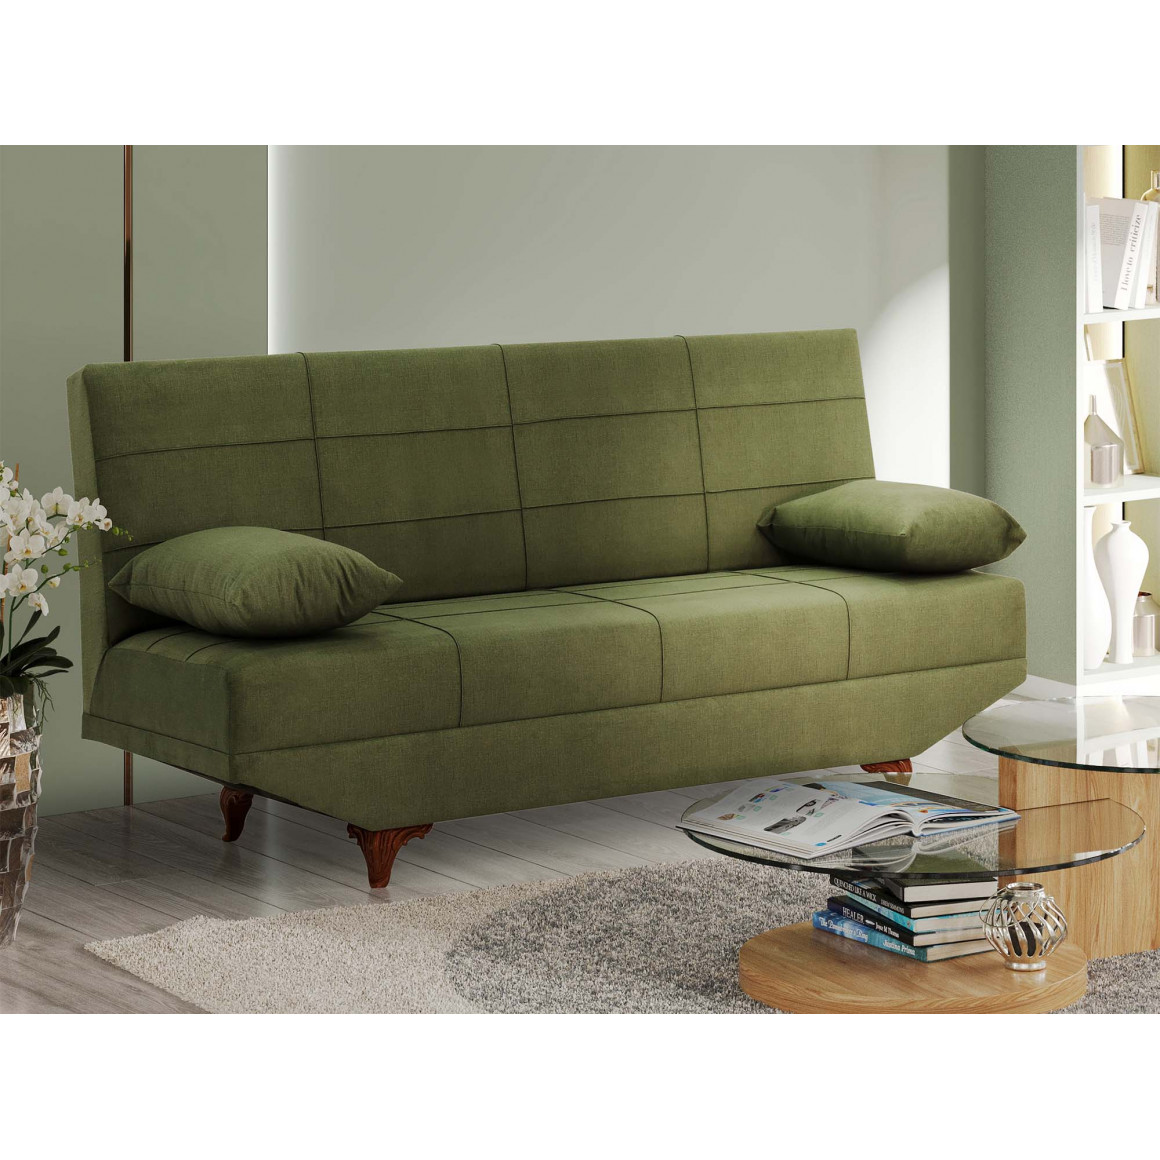 sofa HOBEL ELISA FIX ECONOM GREEN GAMMA OLIVE (1)